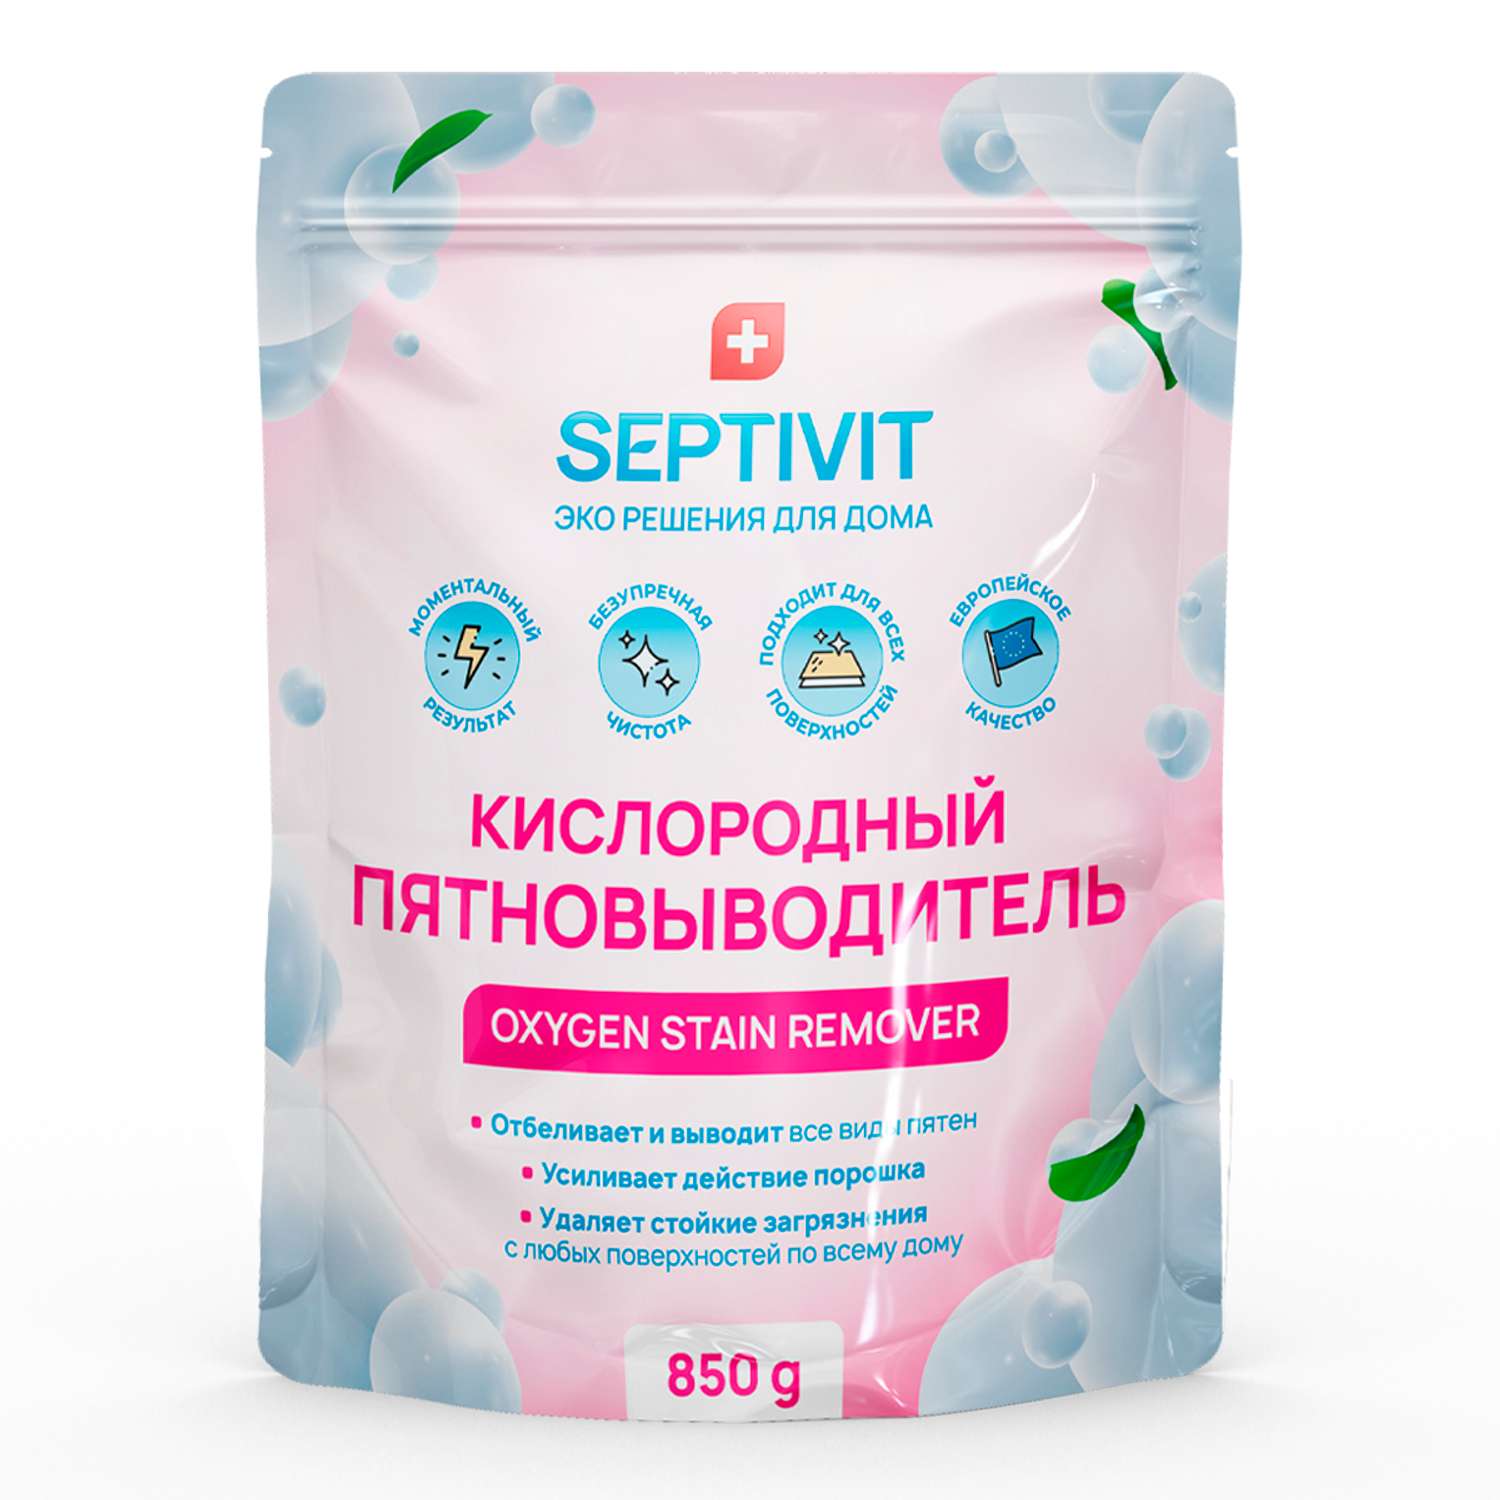 Пятновыводитель SEPTIVIT Premium кислородный отбеливатель 850г - фото 1